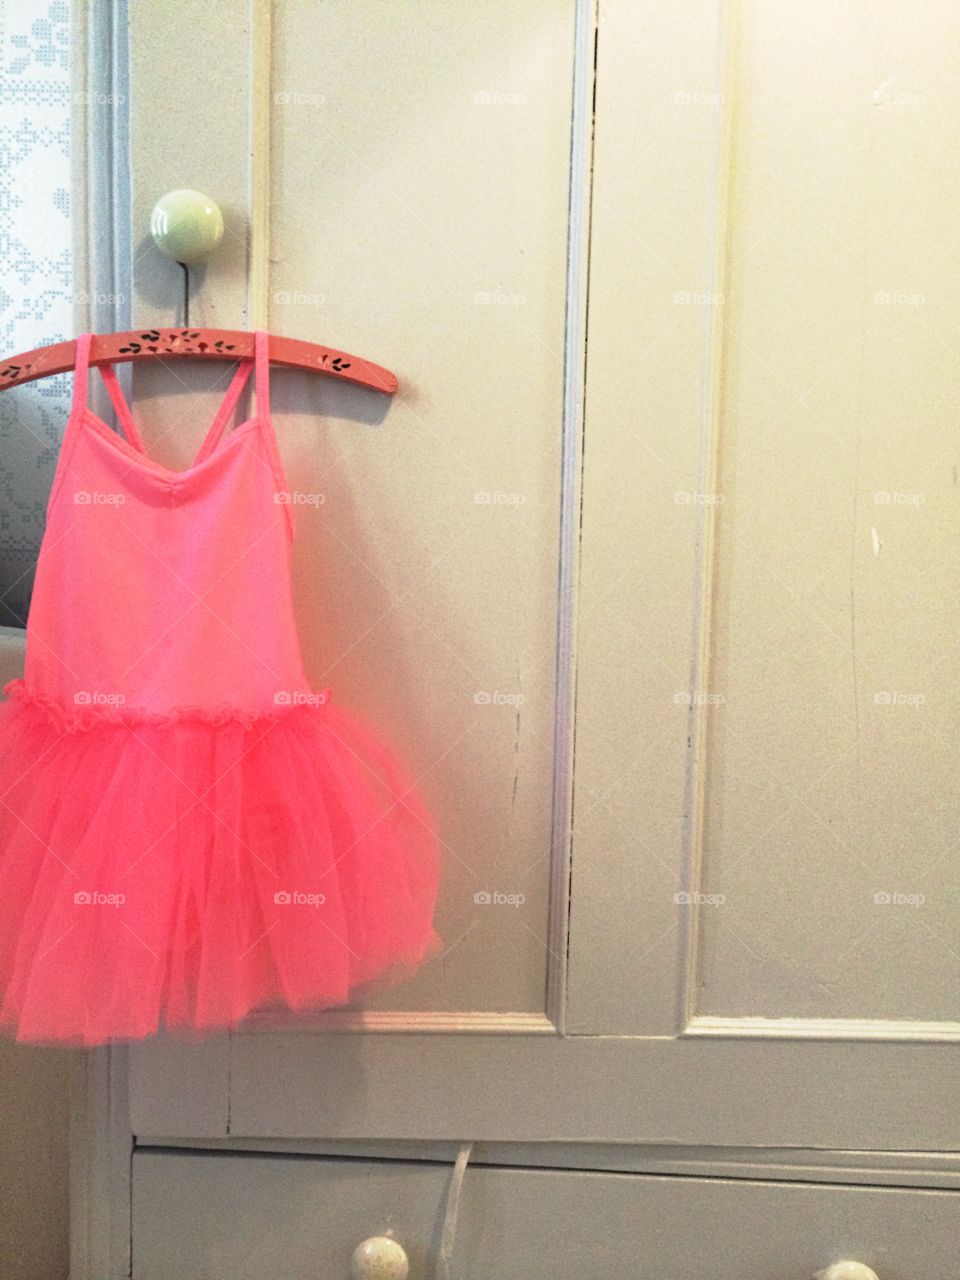 Ballerina dress. Ballerina dress on hanger